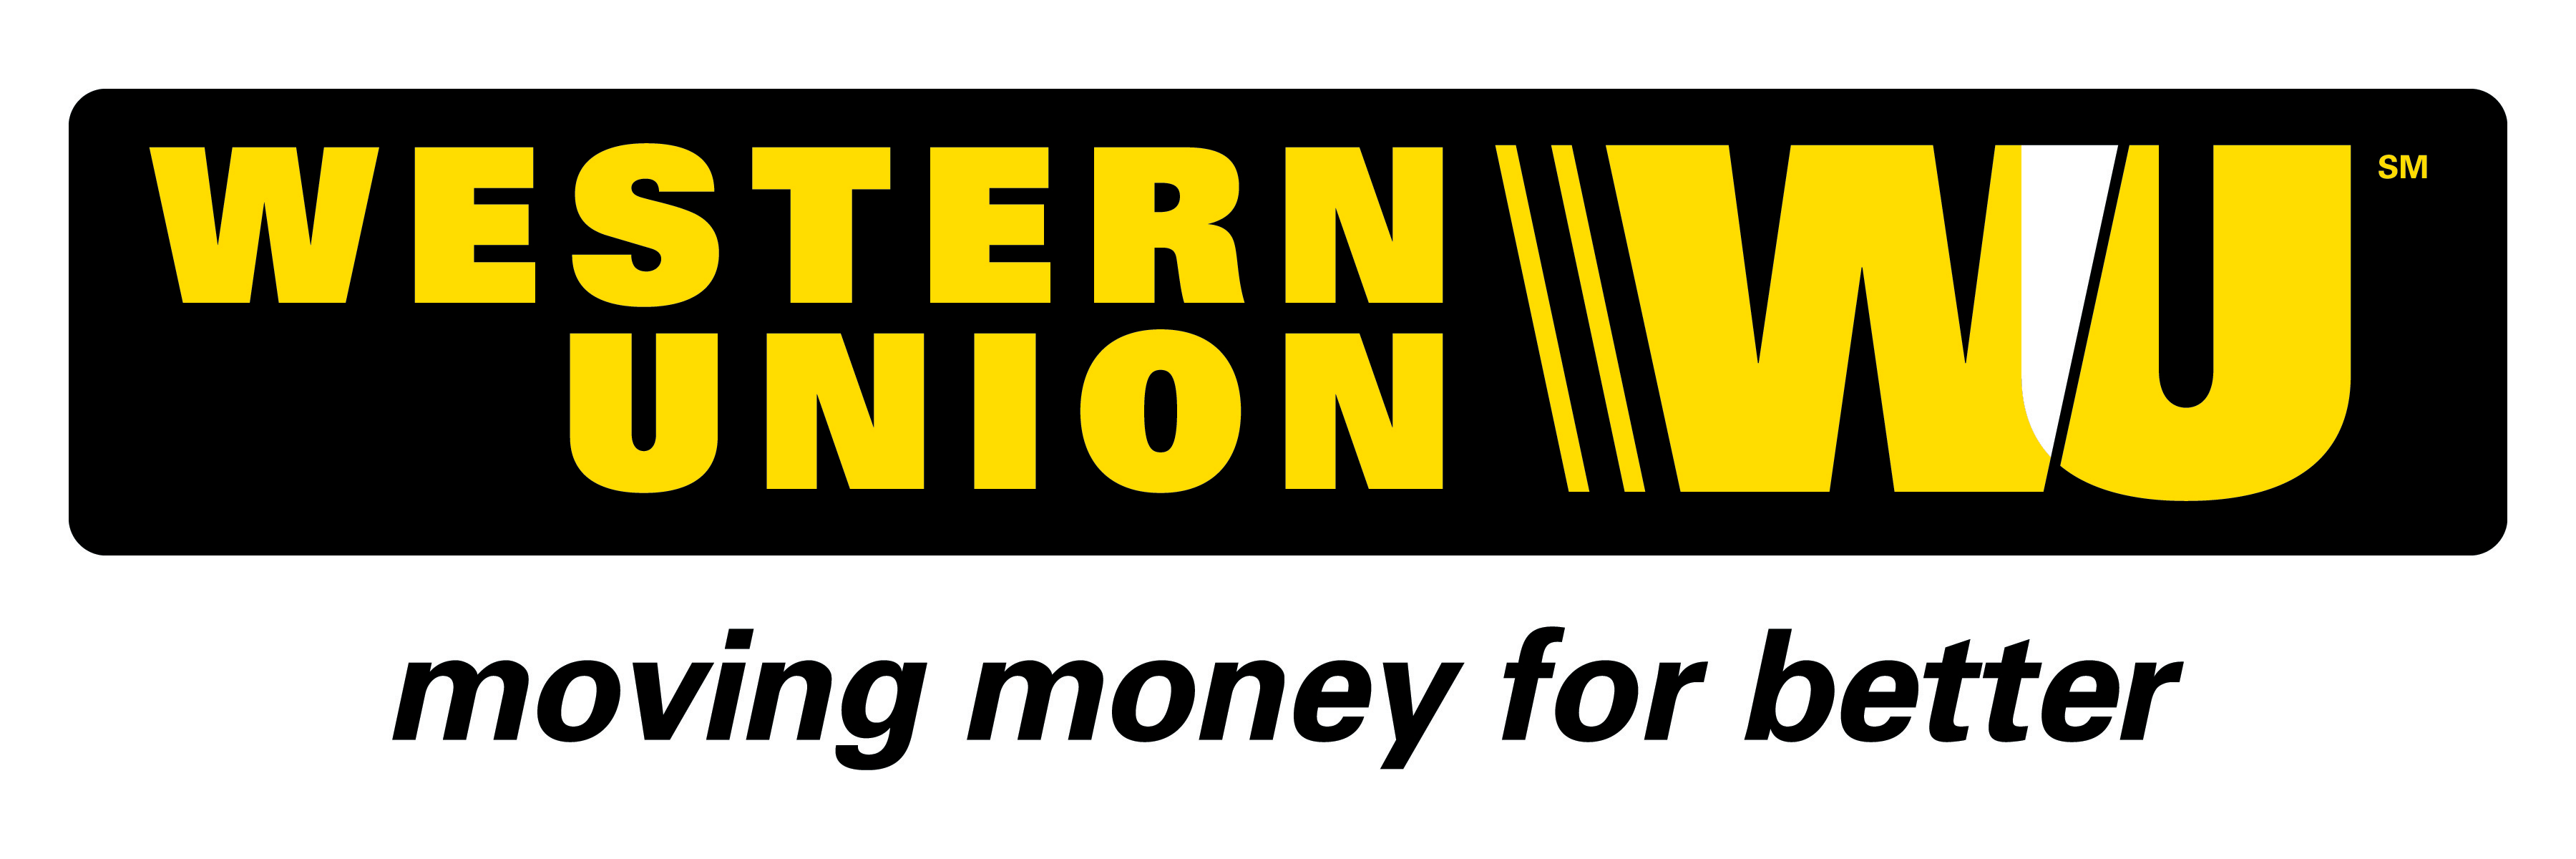 Western Union Logo Vector - W